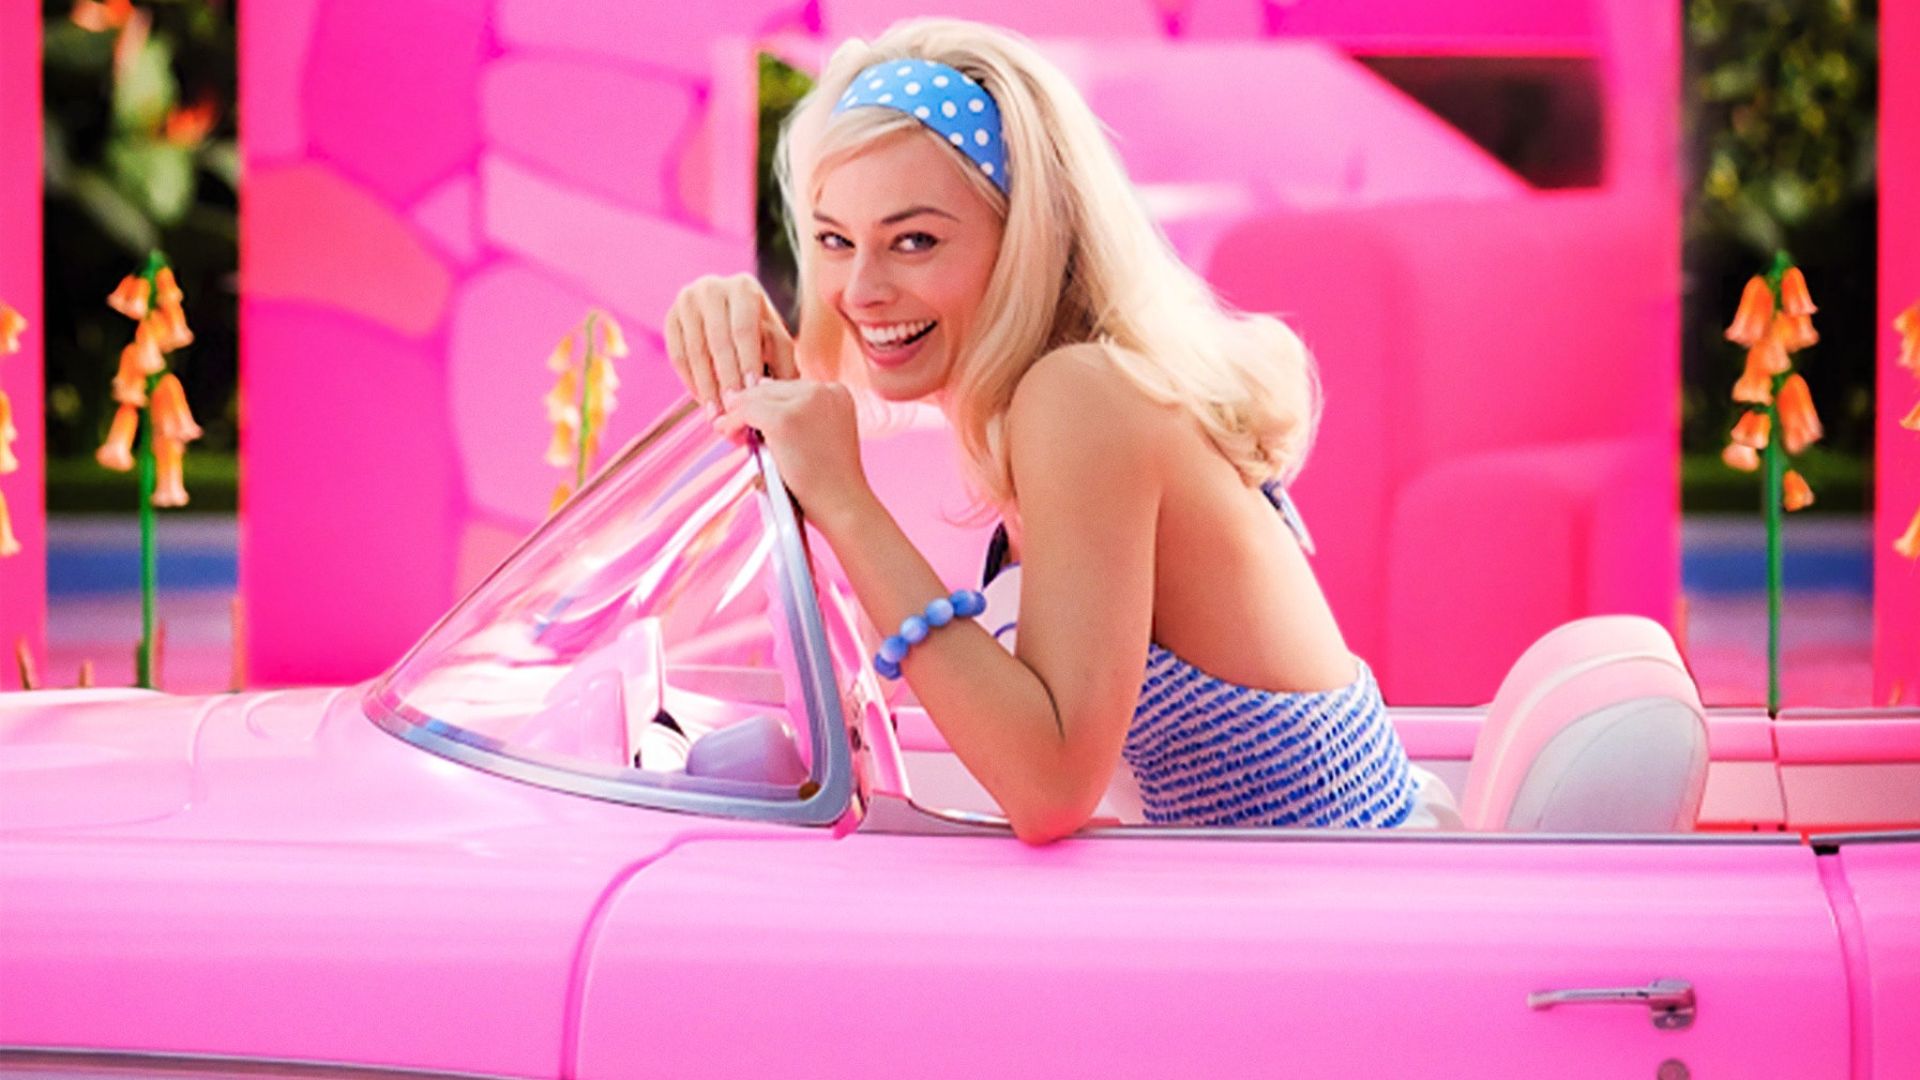 Margot Robbie en escena promocional de Barbie